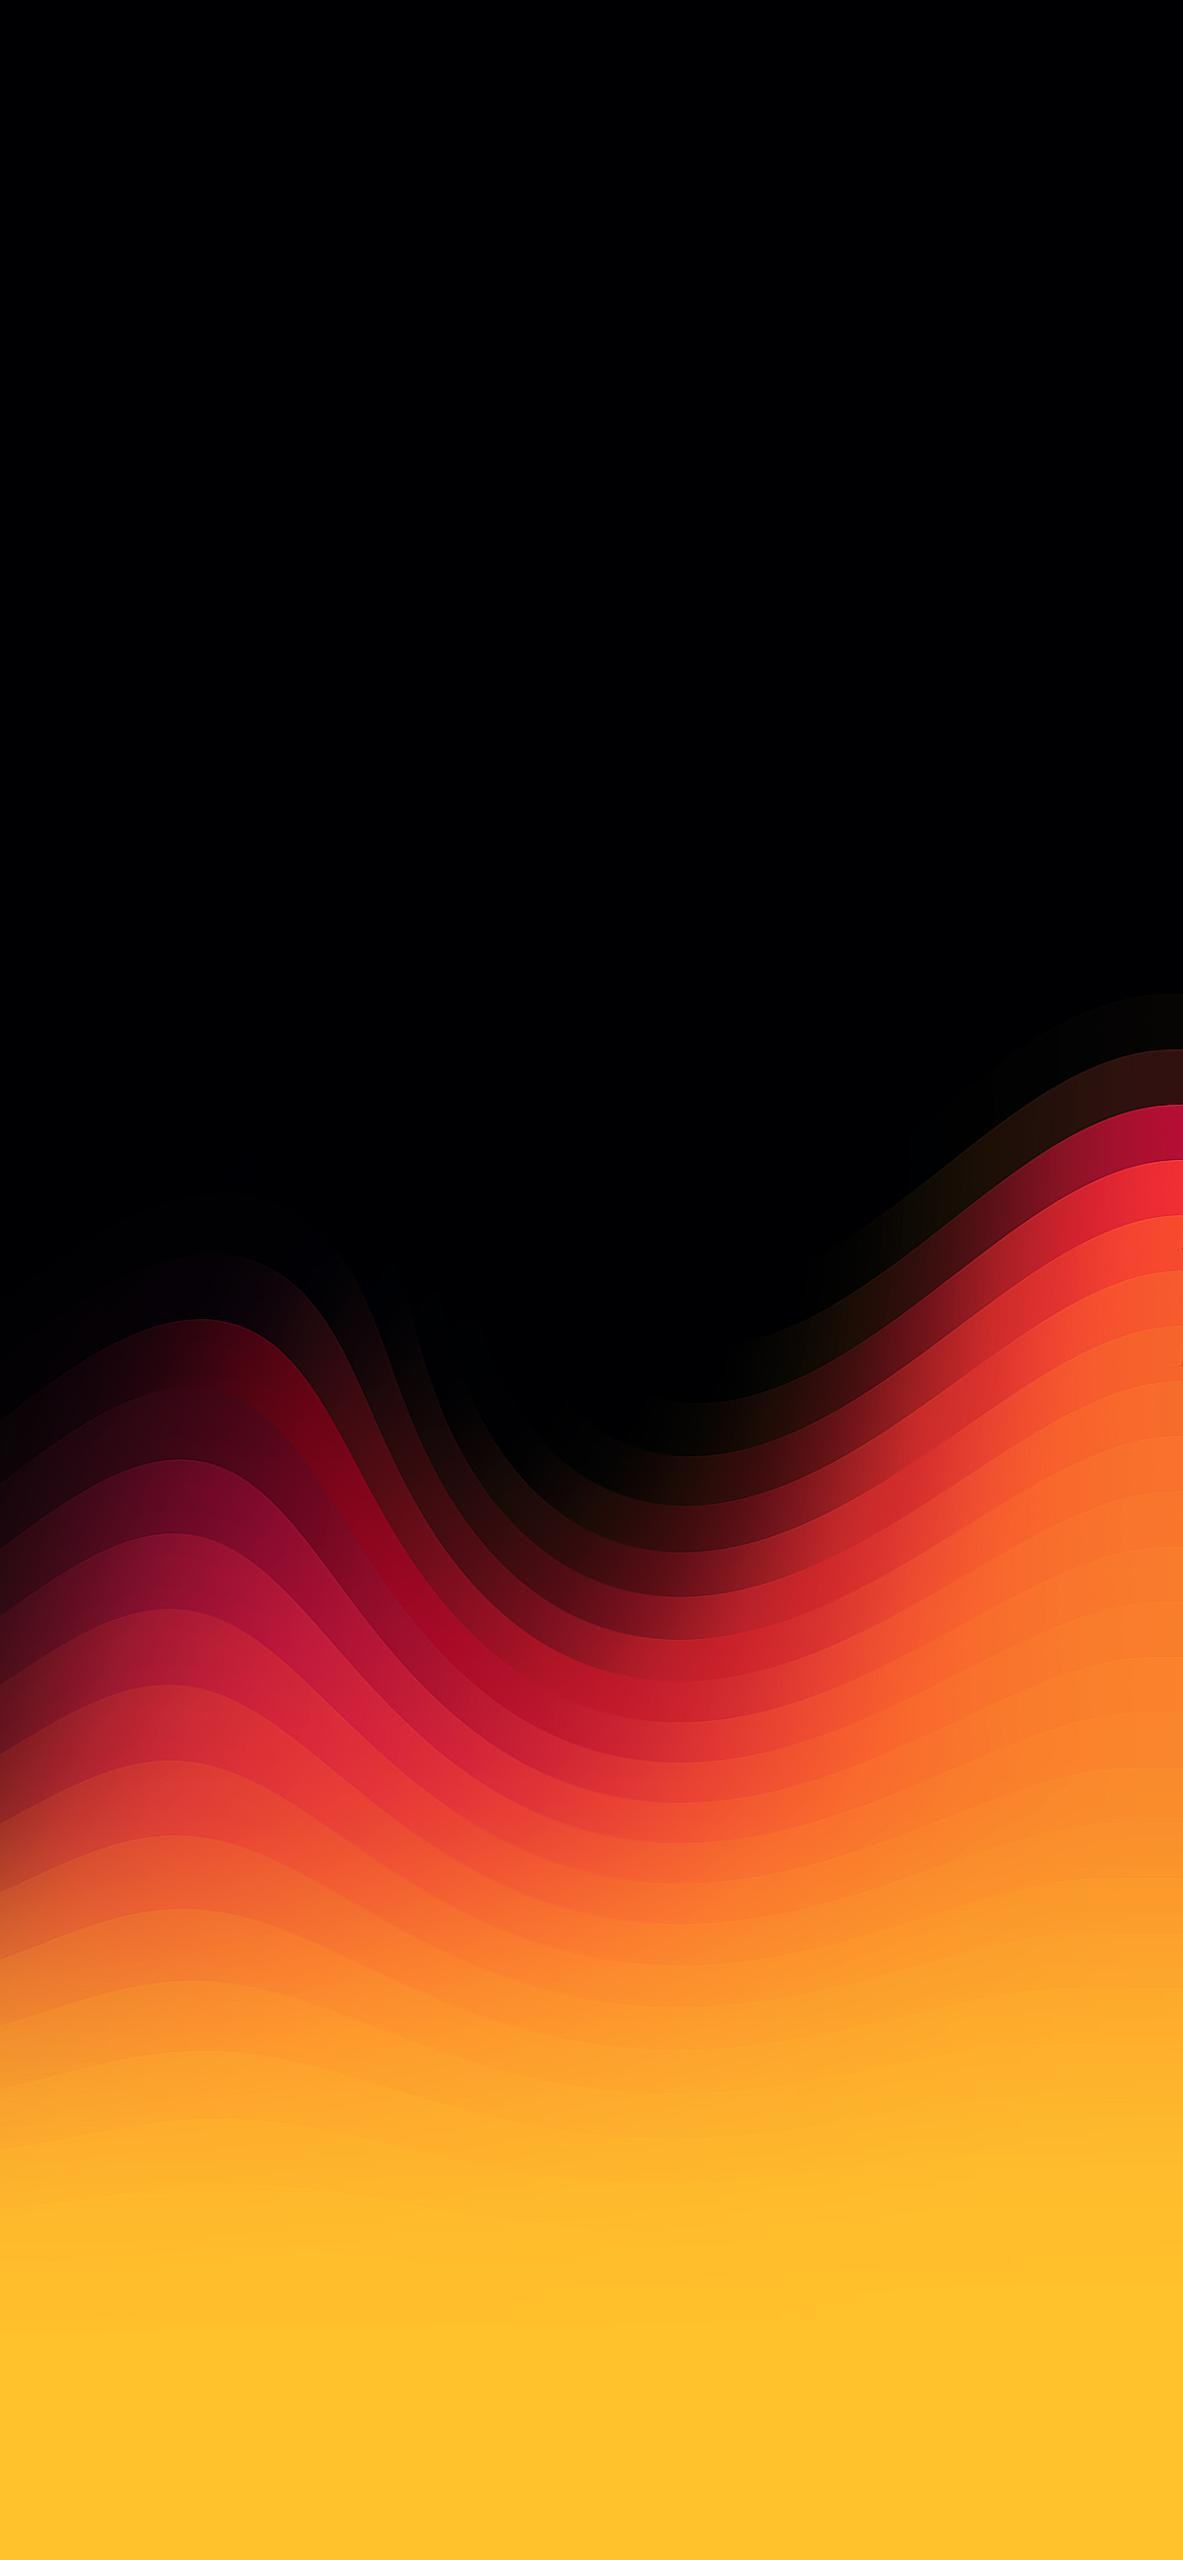 Cải thiện trải nghiệm của màn hình iPhone XR của bạn với những hình nền 4K đầy màu sắc và sinh động của chúng tôi. Bộ sưu tập hình nền đồng thời giúp cho màn hình của bạn trông sắc nét và chuyên nghiệp, làm nổi bật cho thiết kế của iPhone XR.